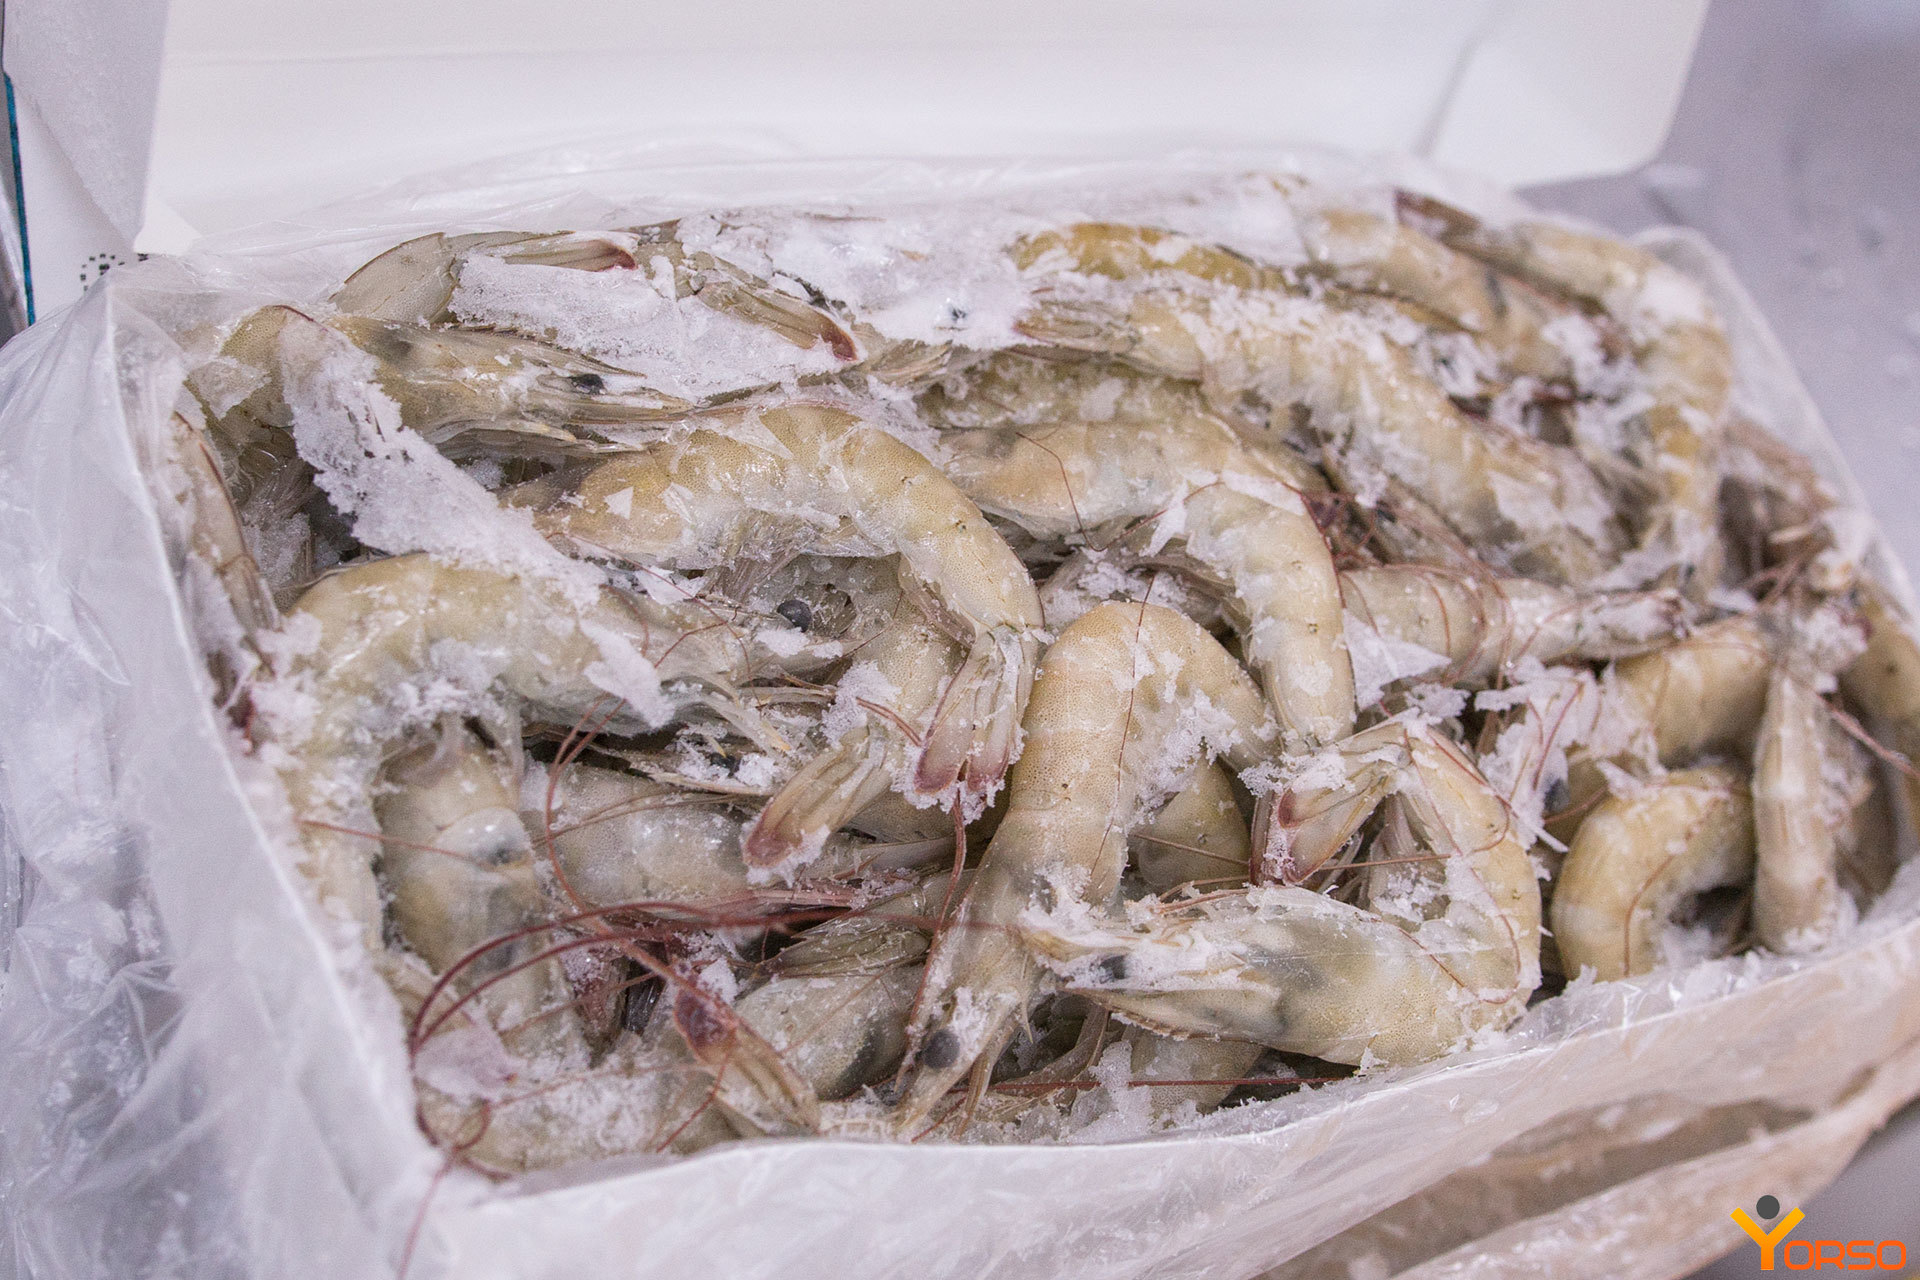 Креветка с головой в панцире. Penaeus vannamei креветки. Креветки Frozen Shrimp 21/25. Креветки ванамей Эквадор блок. Креветка vannamei блок 1,8кг (Эквадор).